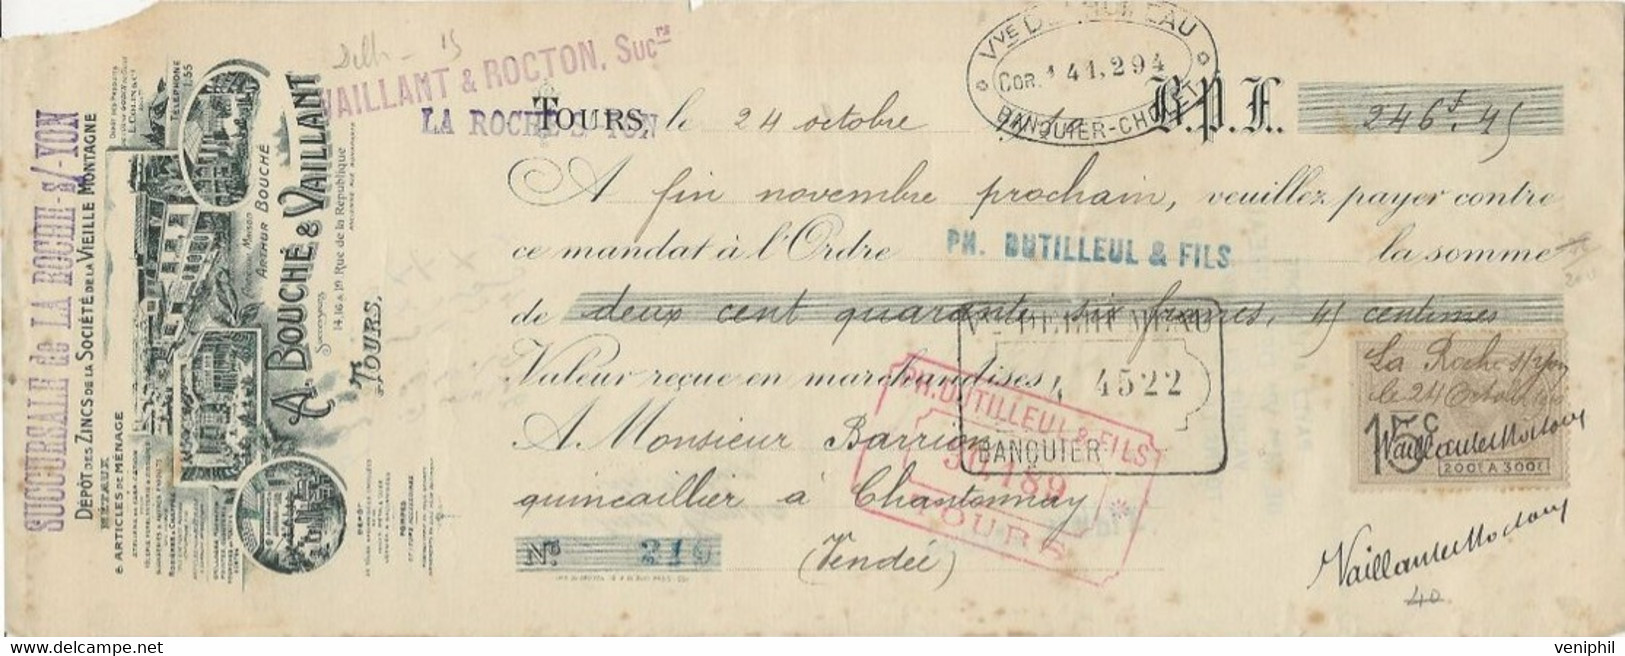 LETTRE DE CHANGE - A BOUCHE ET VAILLANT -TOURS - DEPOT DES ZINCS DE LA SOCIETE VIEILLE MONTAGNE -1910 - Wissels